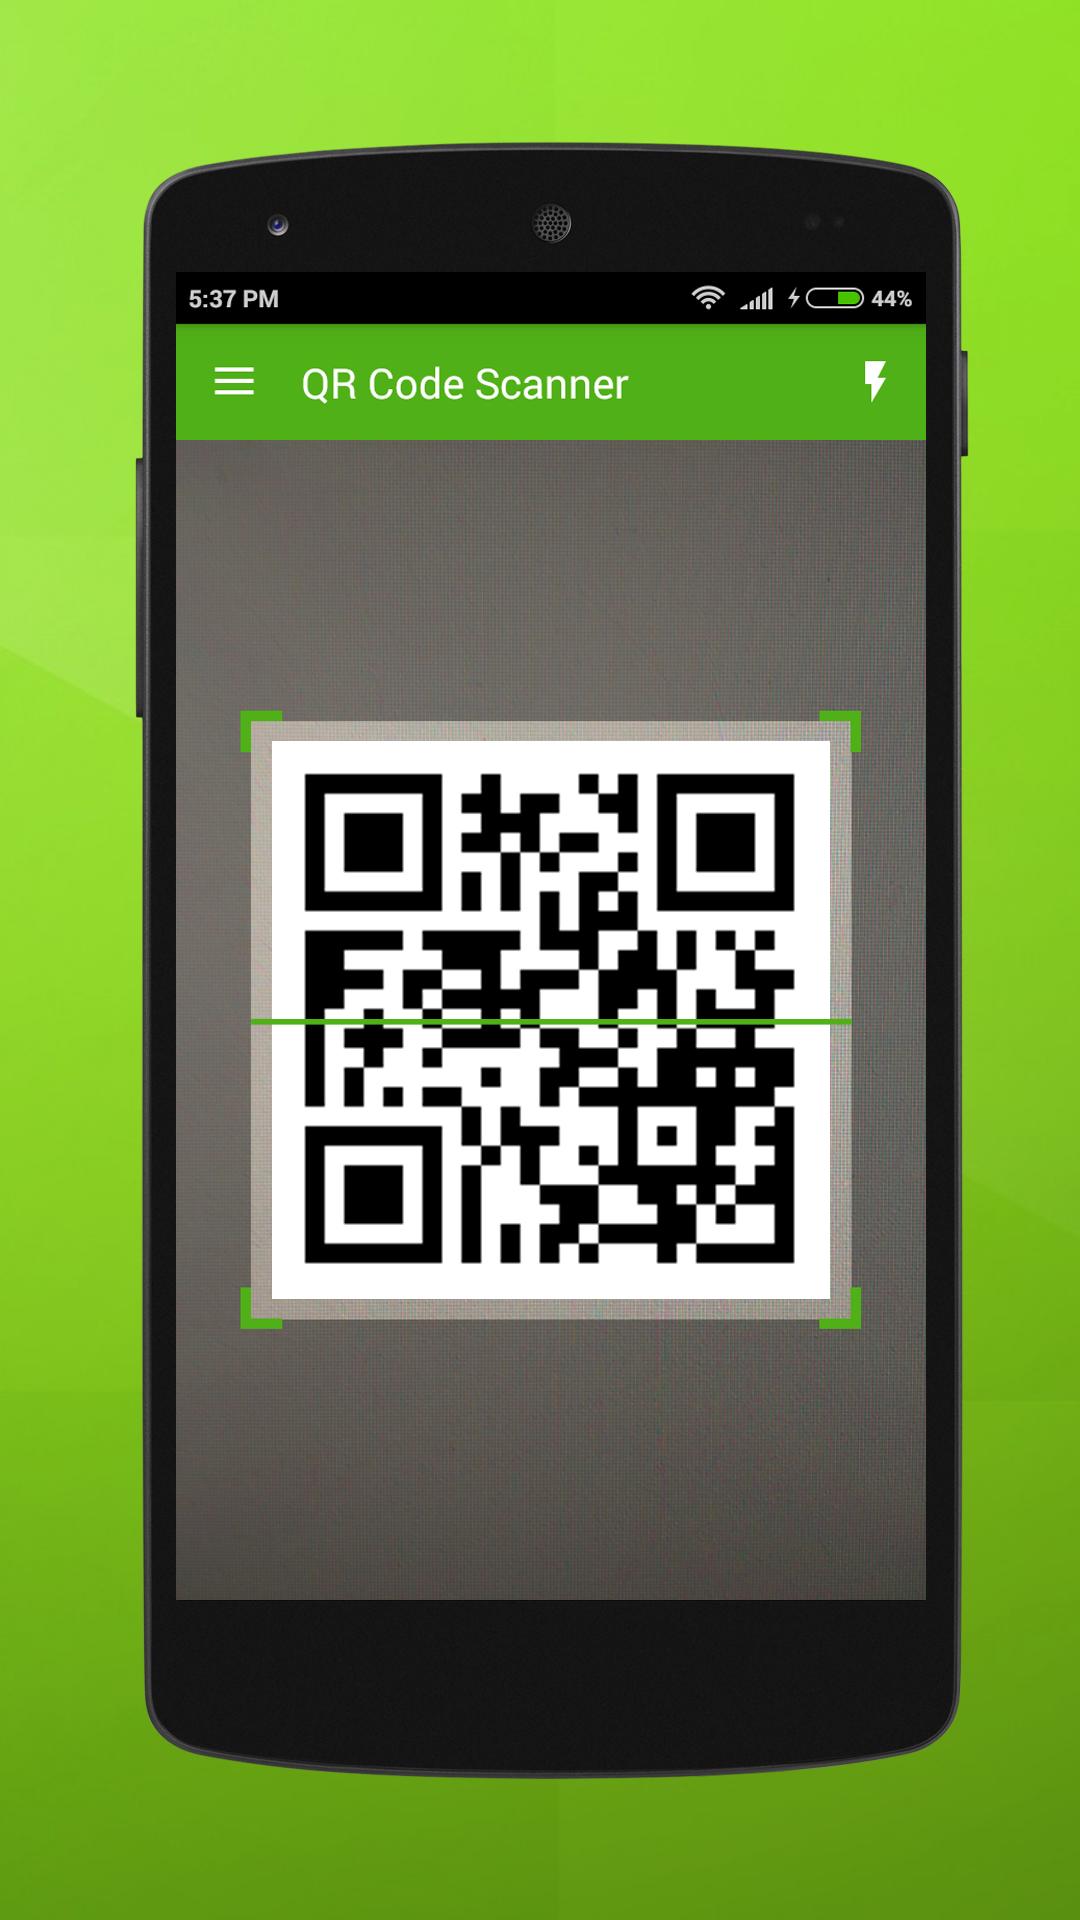 Scan qr code download app. QR код сканер. QR код считыватель. Считыватель QR кодов для Android. Отсканировать QR.